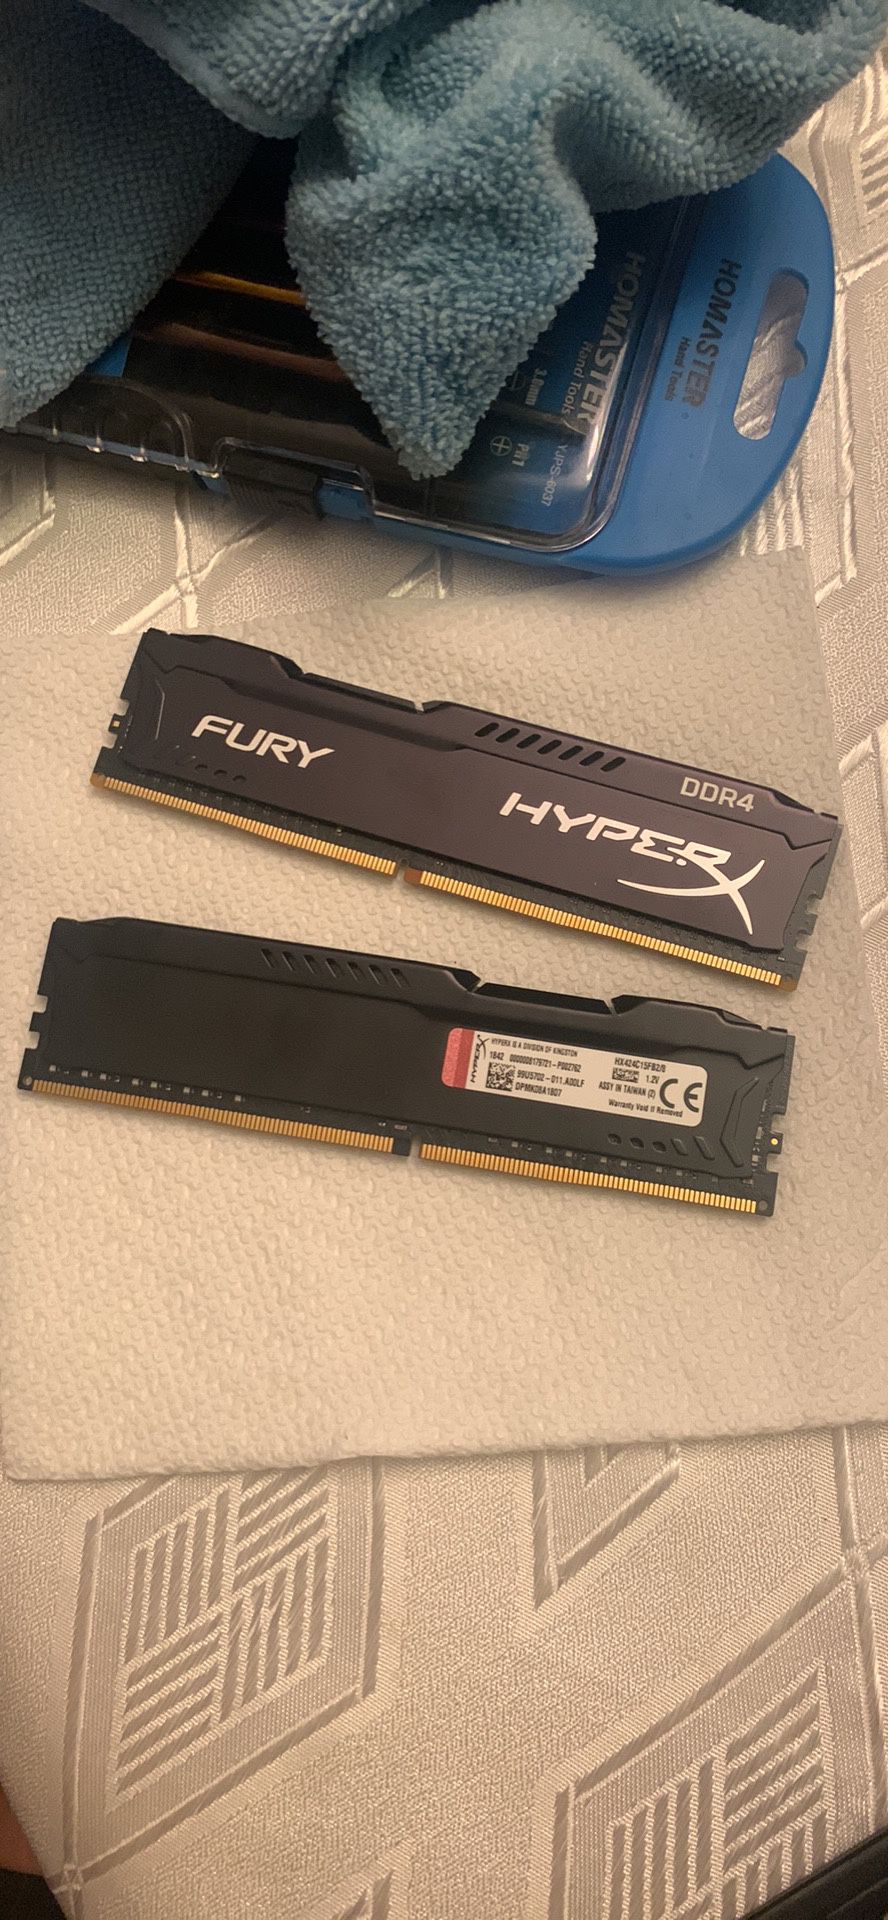 HyperX Fury 2400mhz DDR4 (2x8gb) RAM